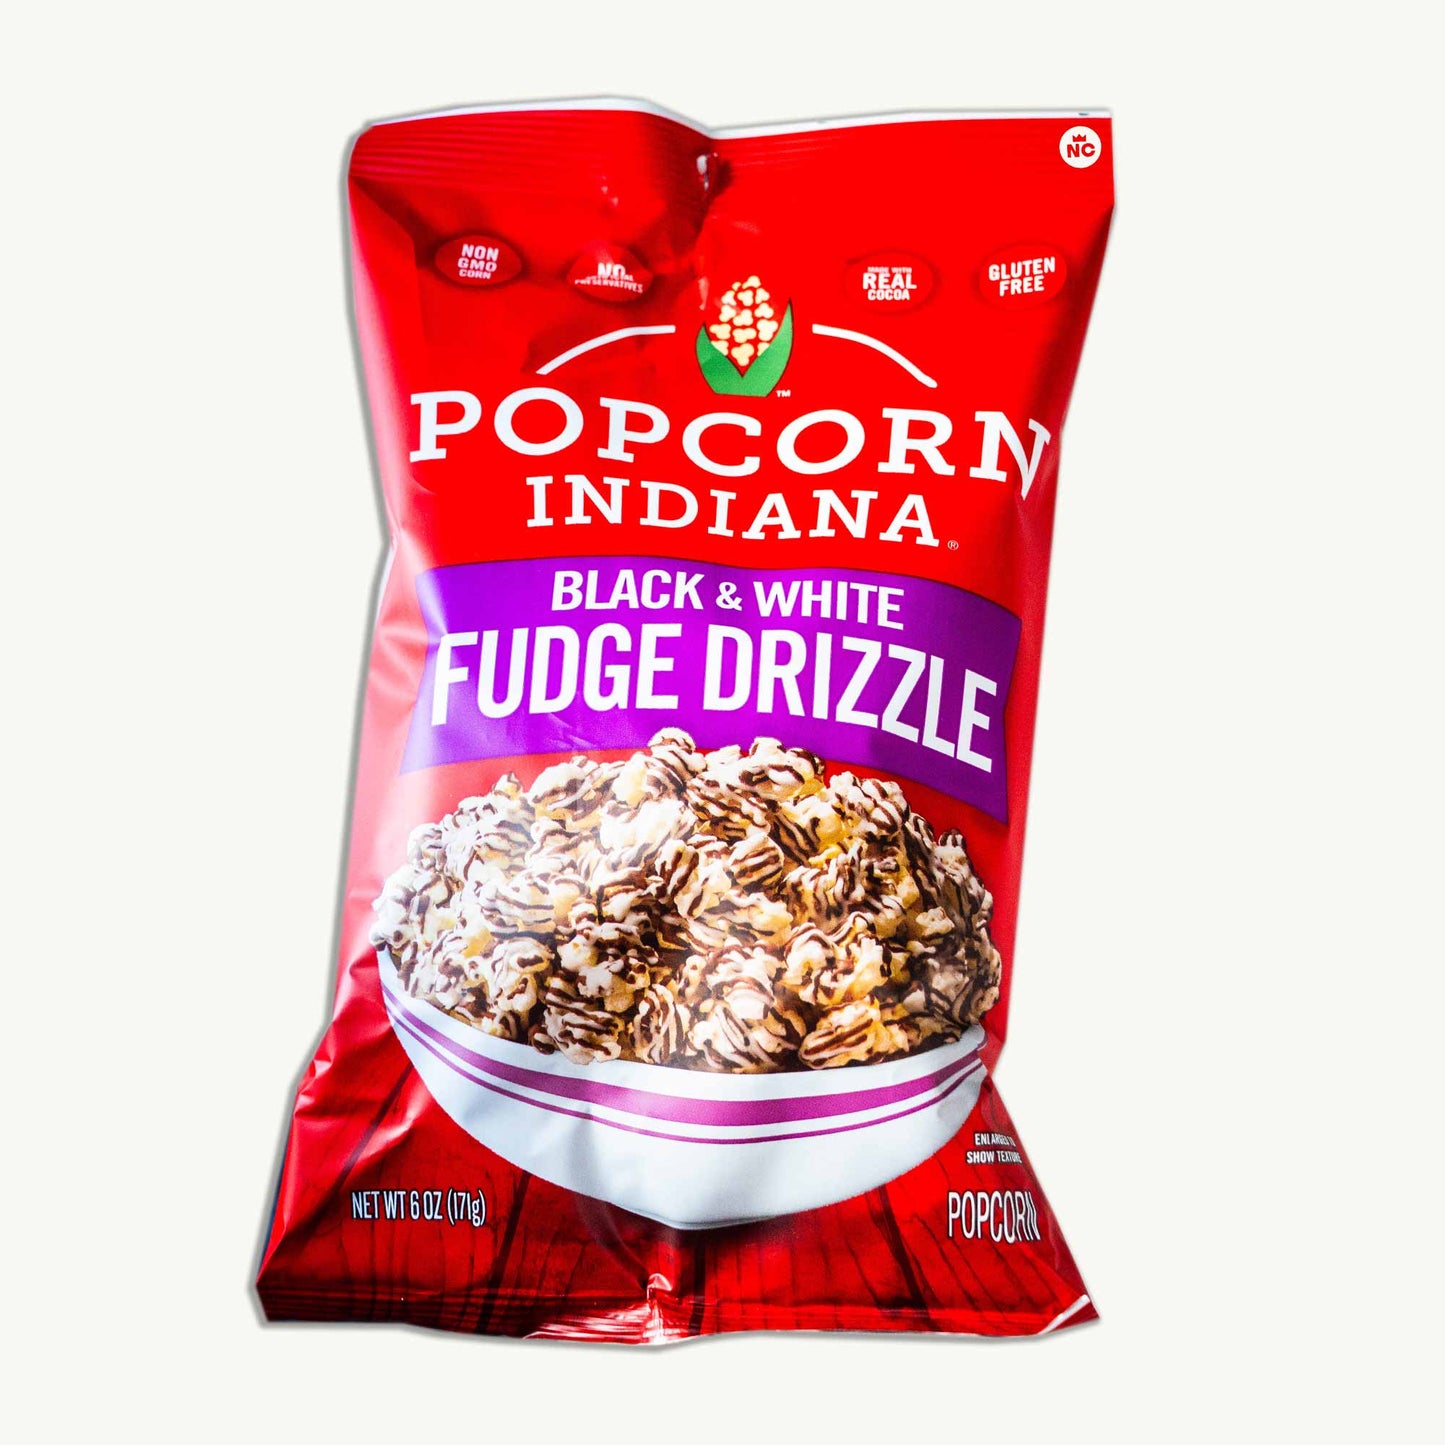 Popcorn Indiana Black and White Fudge Drizzle Popcorn 6oz